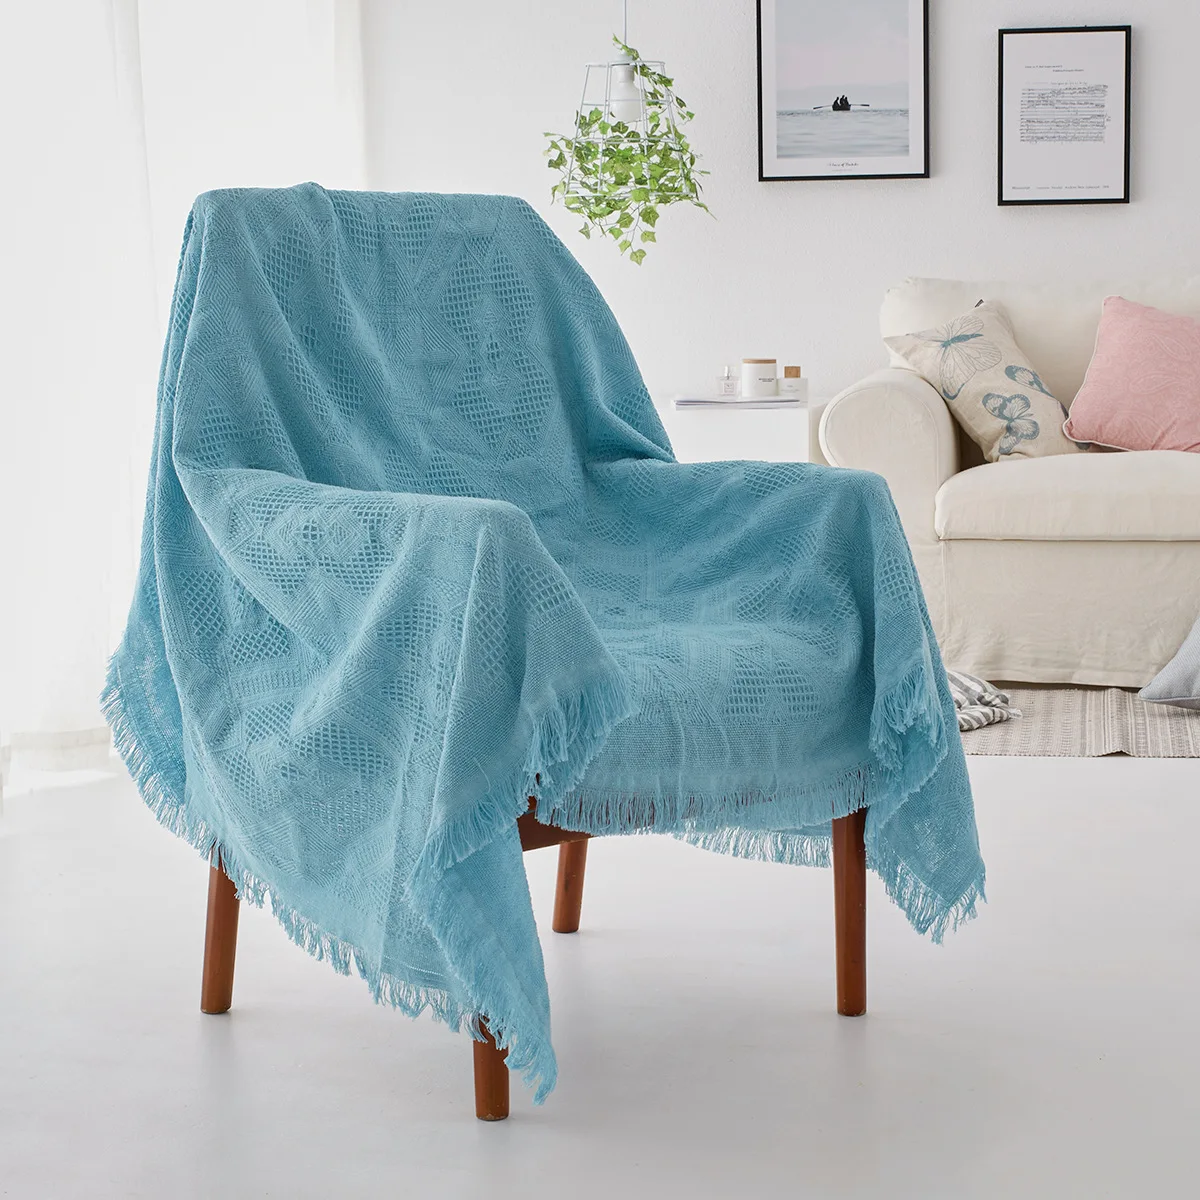 Yaapeet Soild Цвет диван полотенце покрывала для дивана стрейч для диван в гостиной крышка кресло угловой чехол на диван Slipovers - Цвет: blue